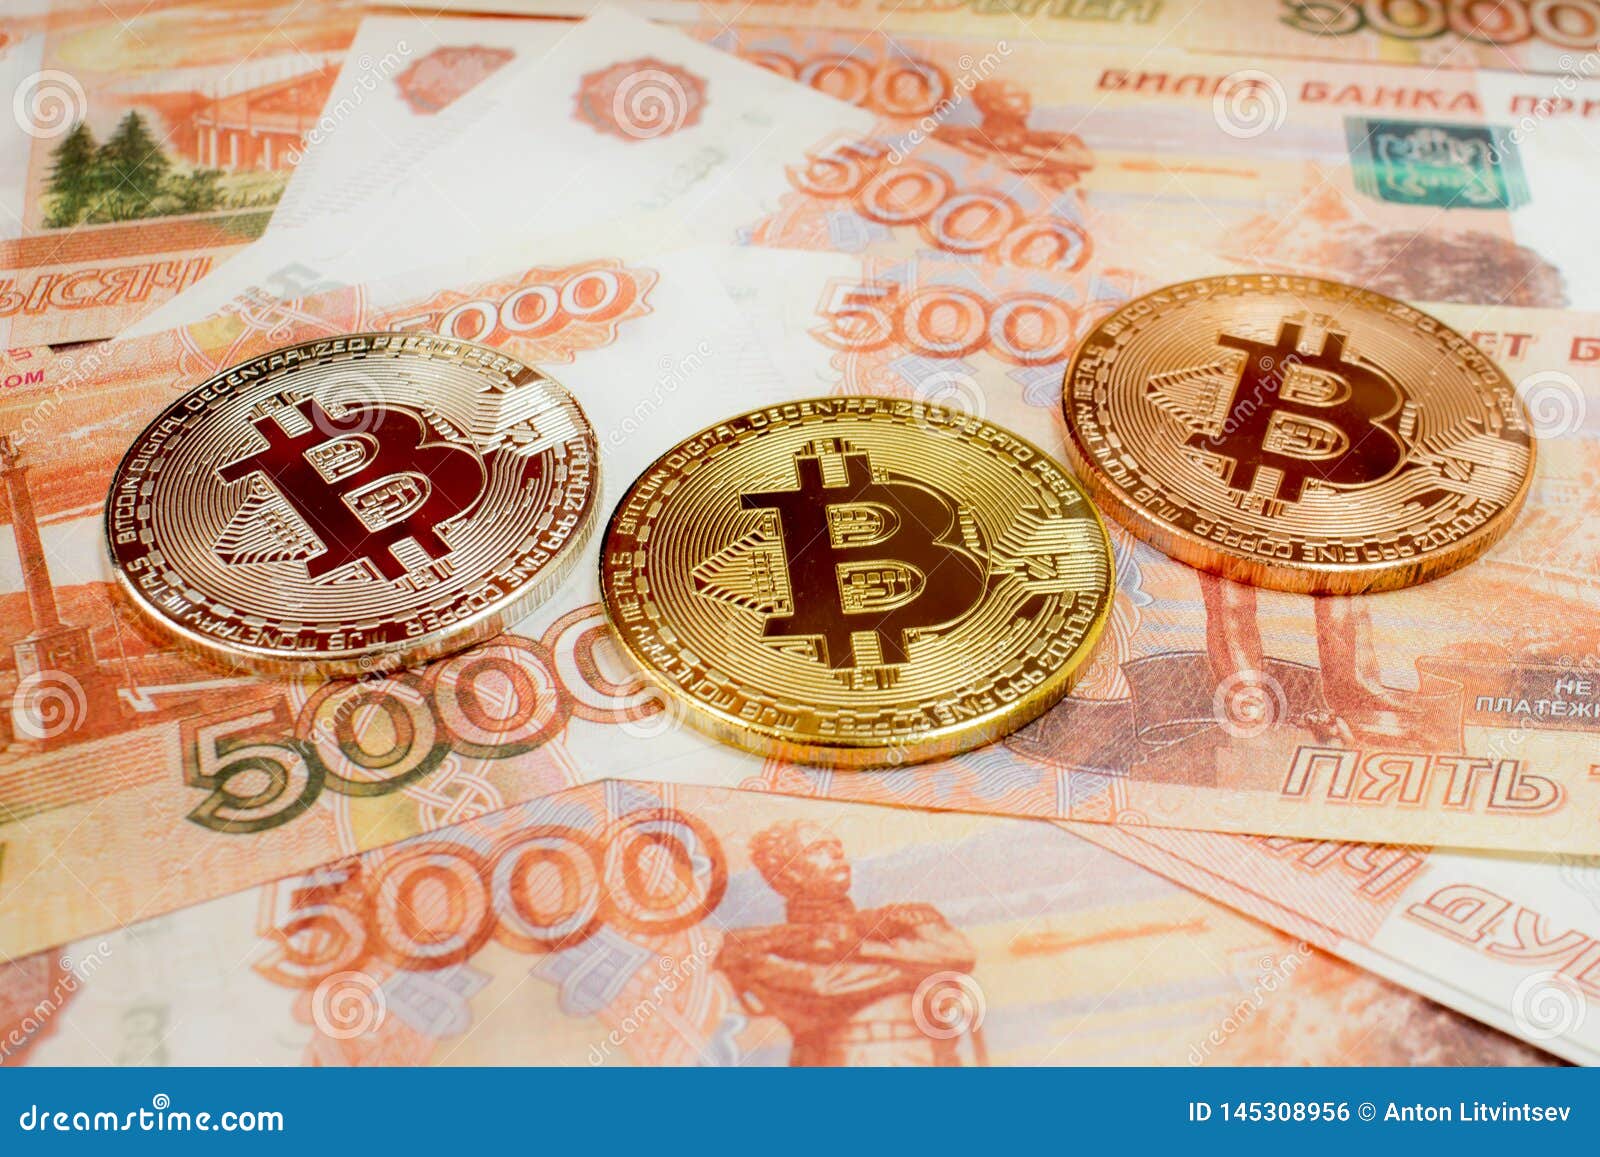 Скачать фри биткоин на русском курс рубля сбербанк украина